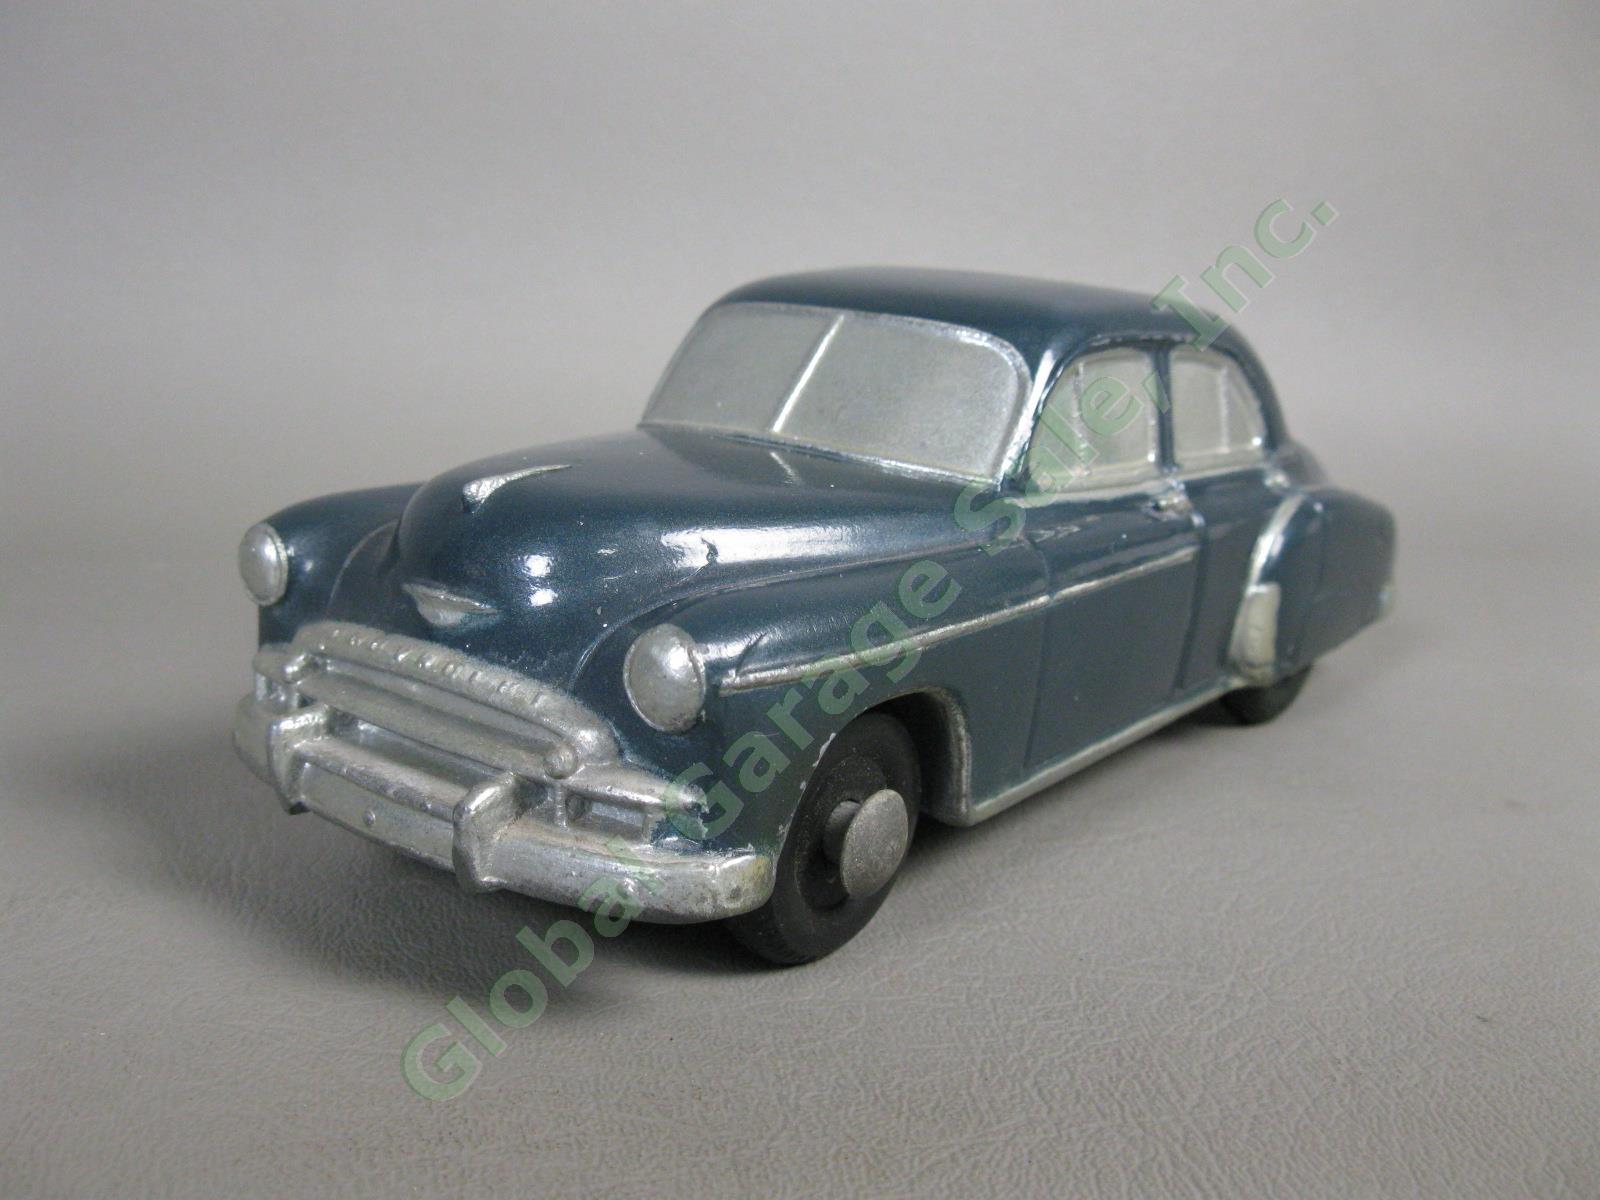 1950 Chevrolet Styleline DeLuxe Windsor Blue Sedan Banthrico Dealer Promo Car NR